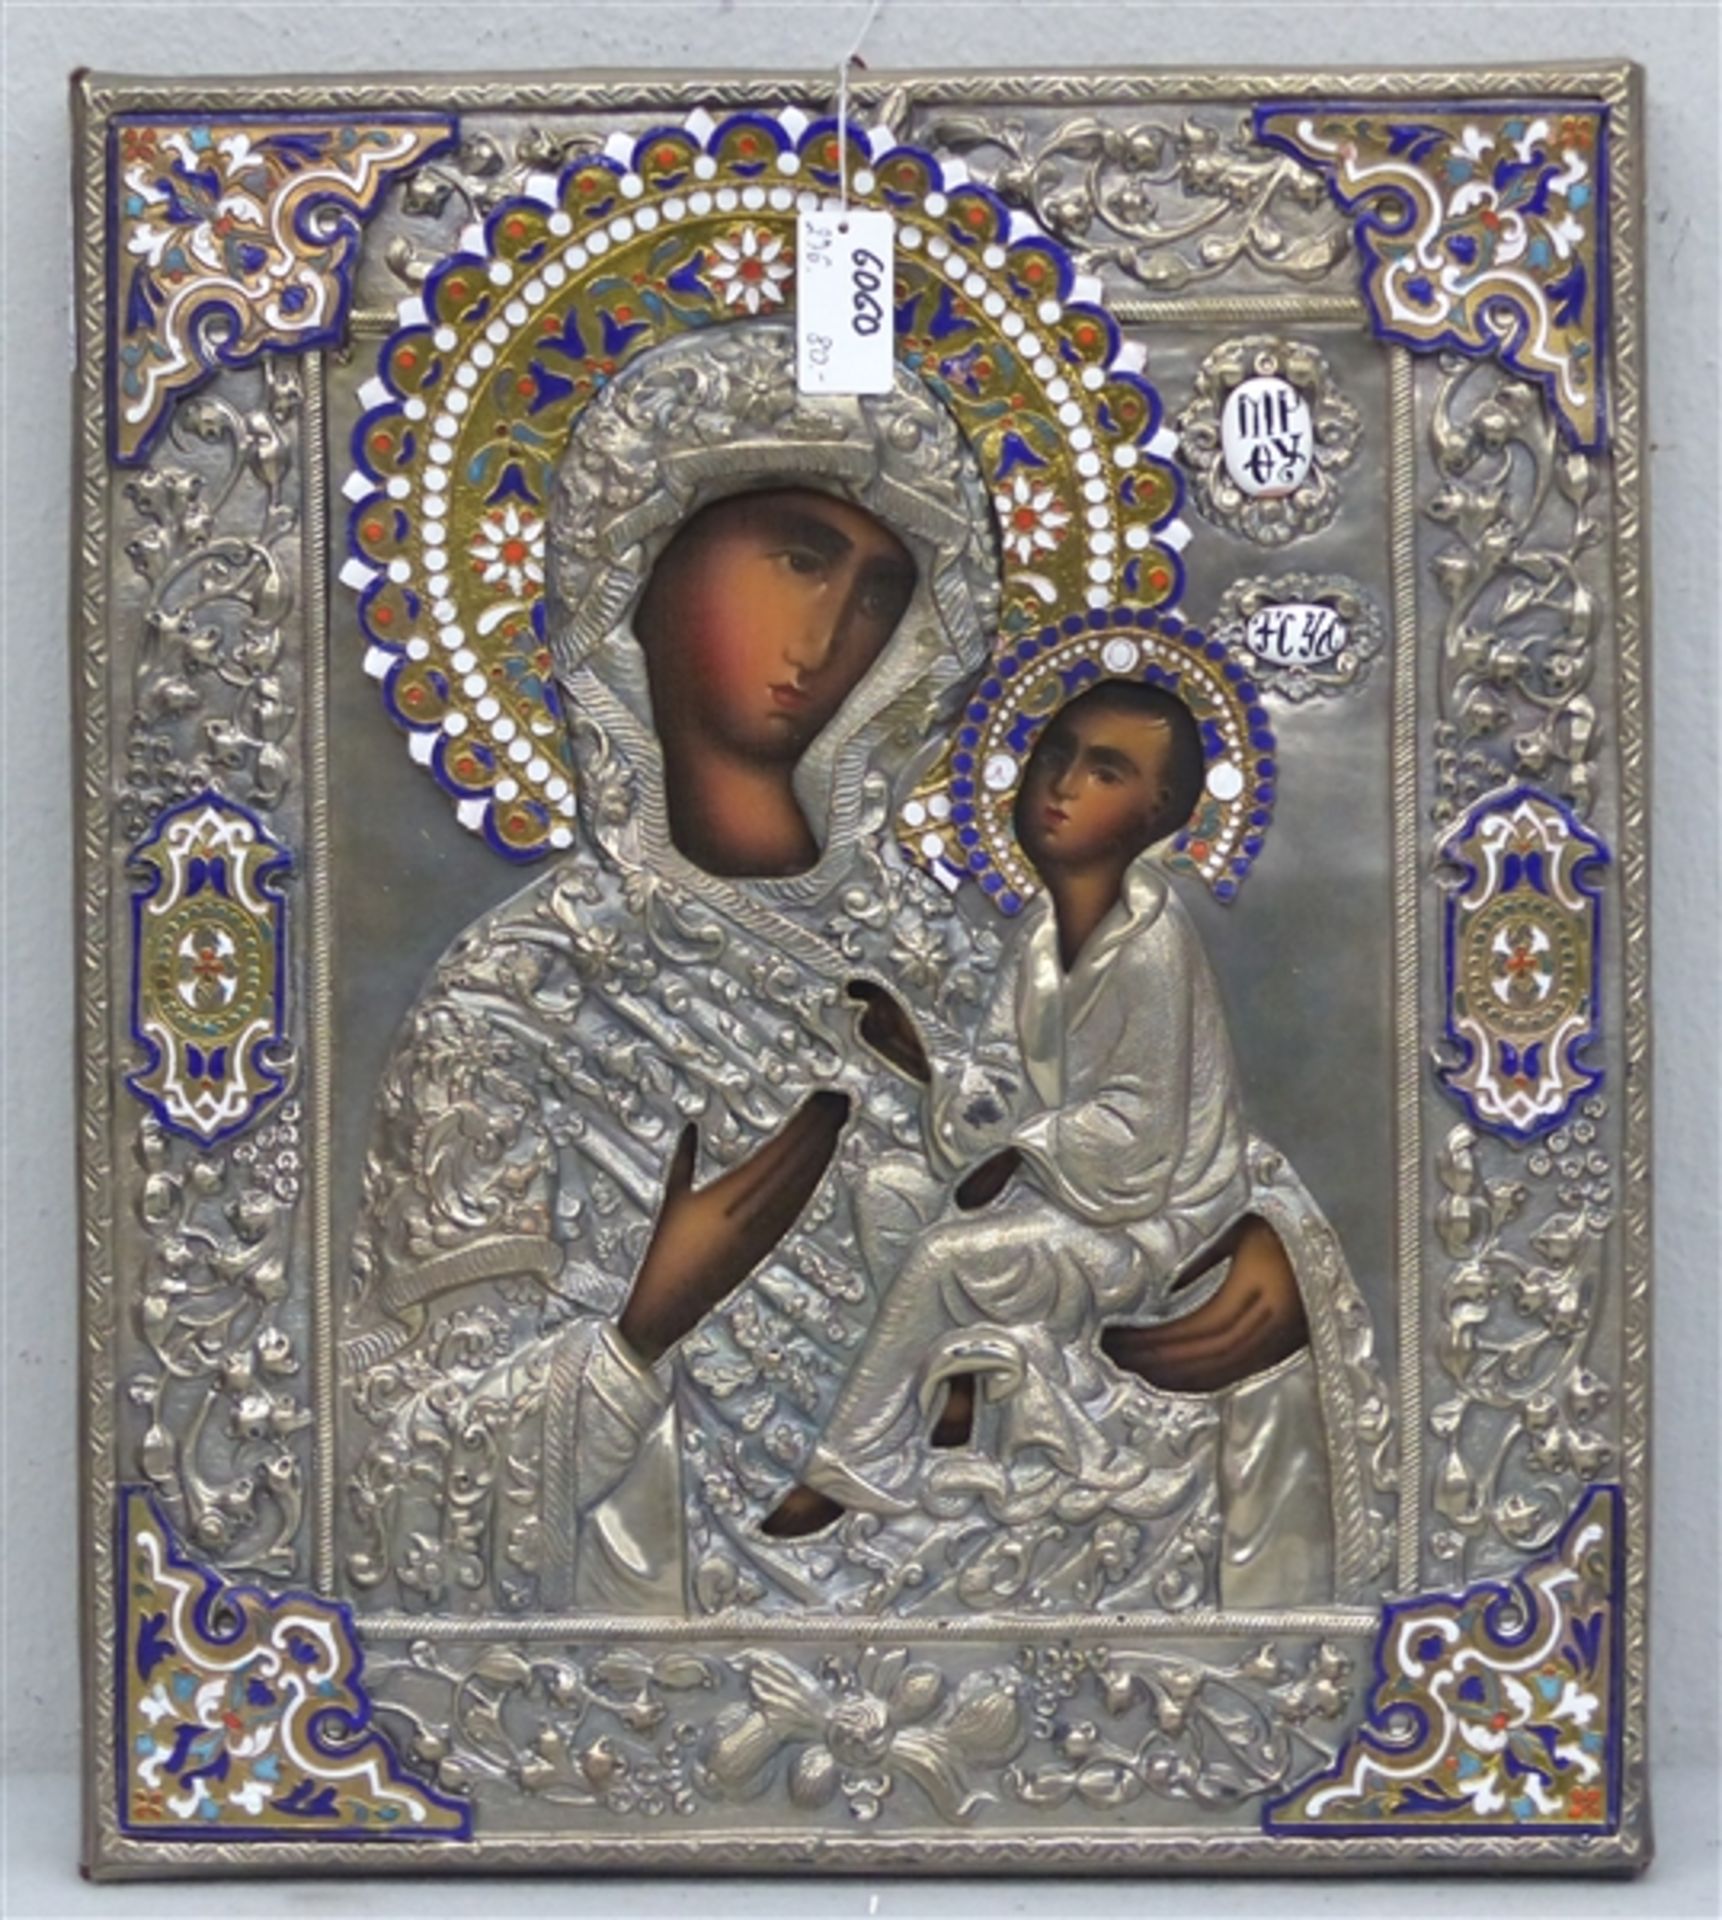 Ikonenreplik Russland, 20. Jh., Mutter Gottes mit Jesuskind, Metalloklad, teilweise emailliert, 31 x